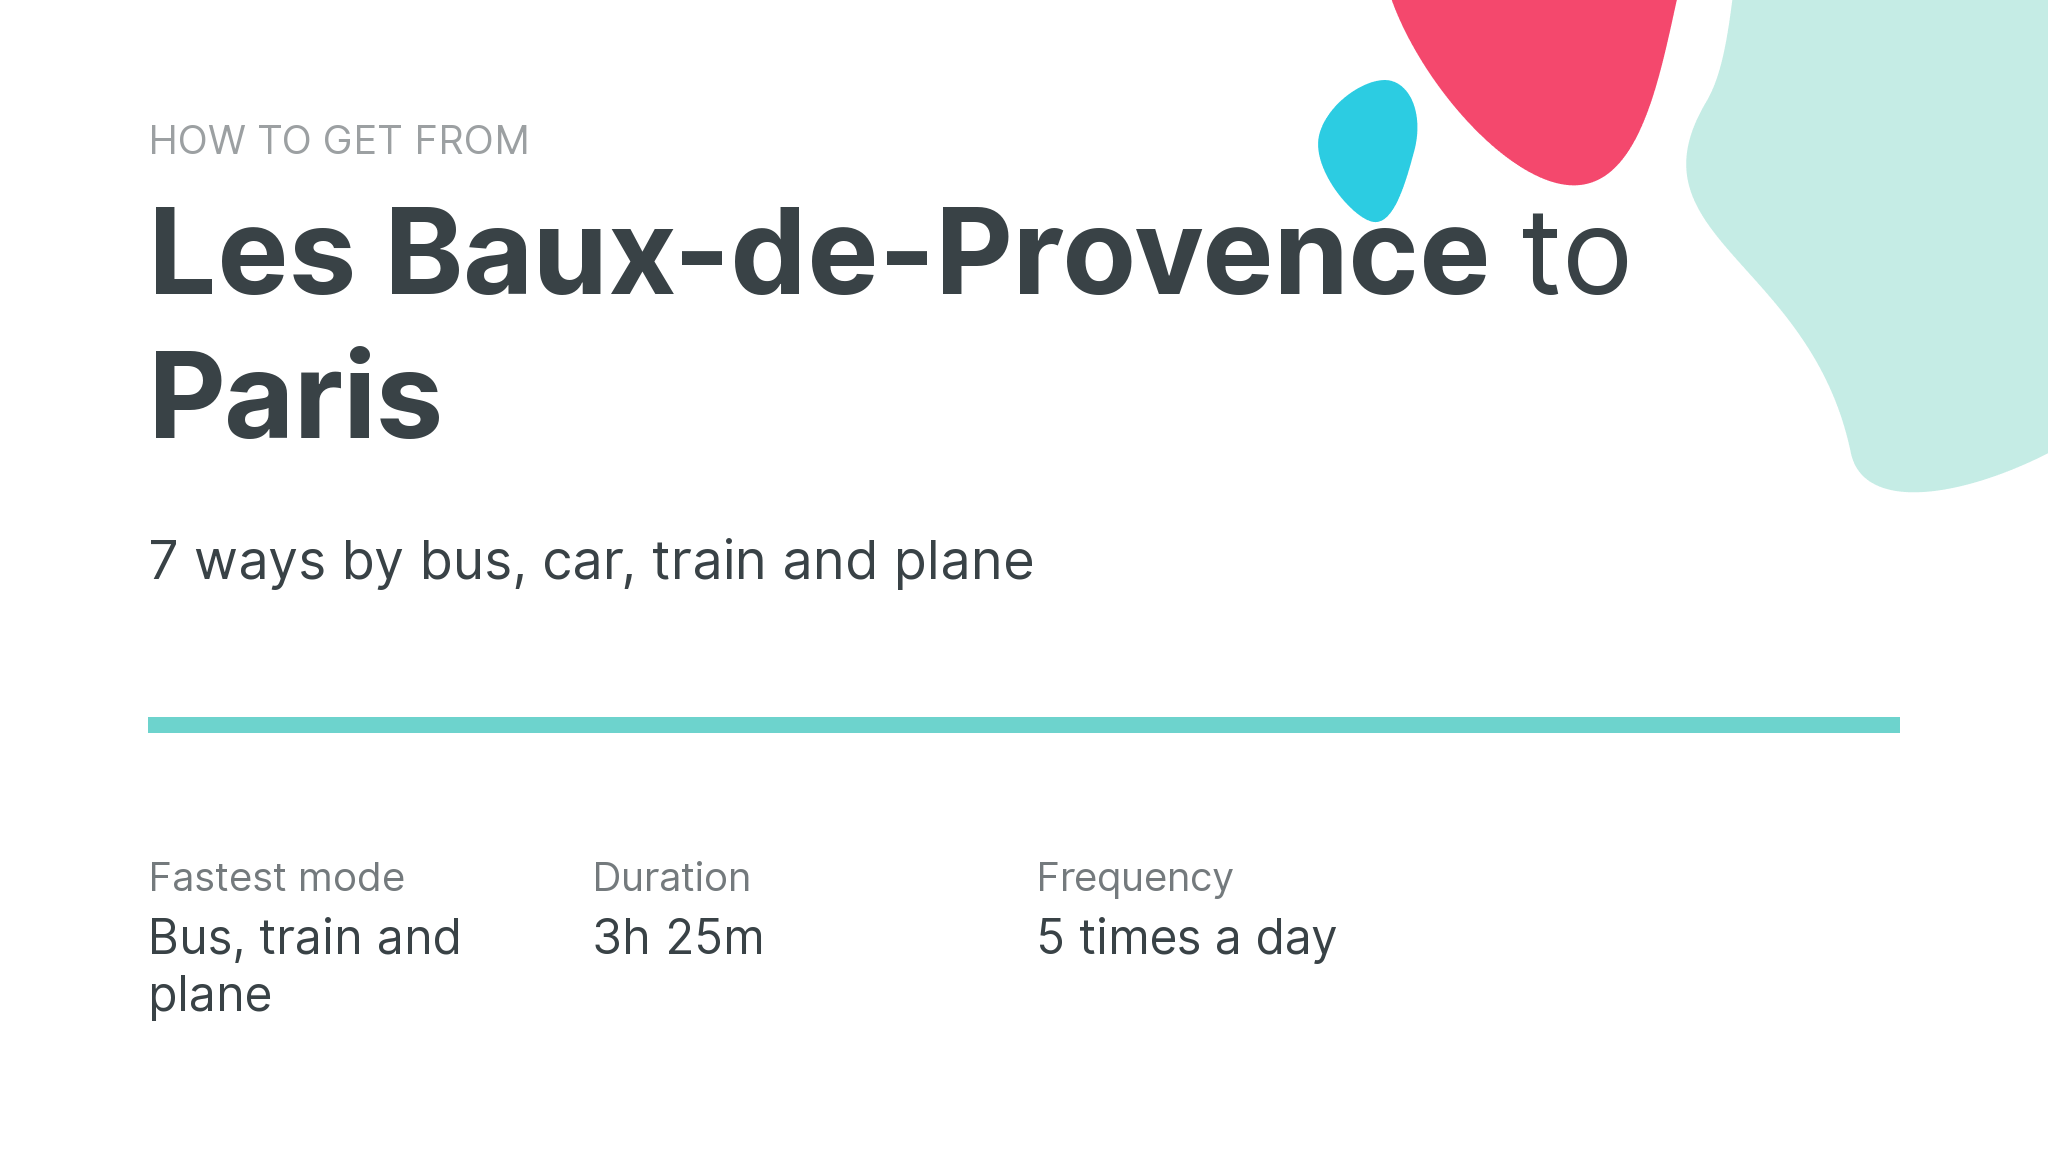 How do I get from Les Baux-de-Provence to Paris